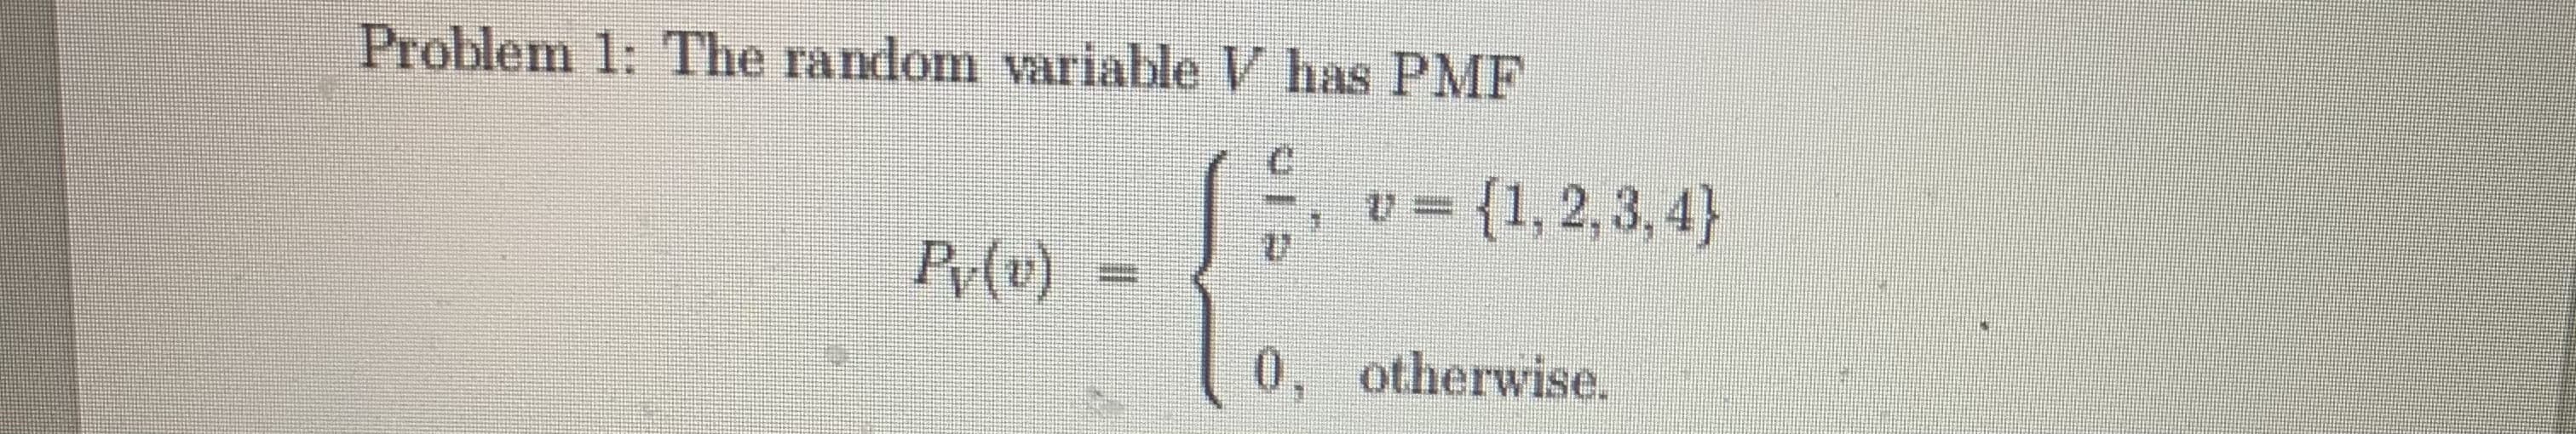 Problem 1: The random variable V has PMF
v =
{1, 2, 3, 4}
Py(v)
0, otherwise.
